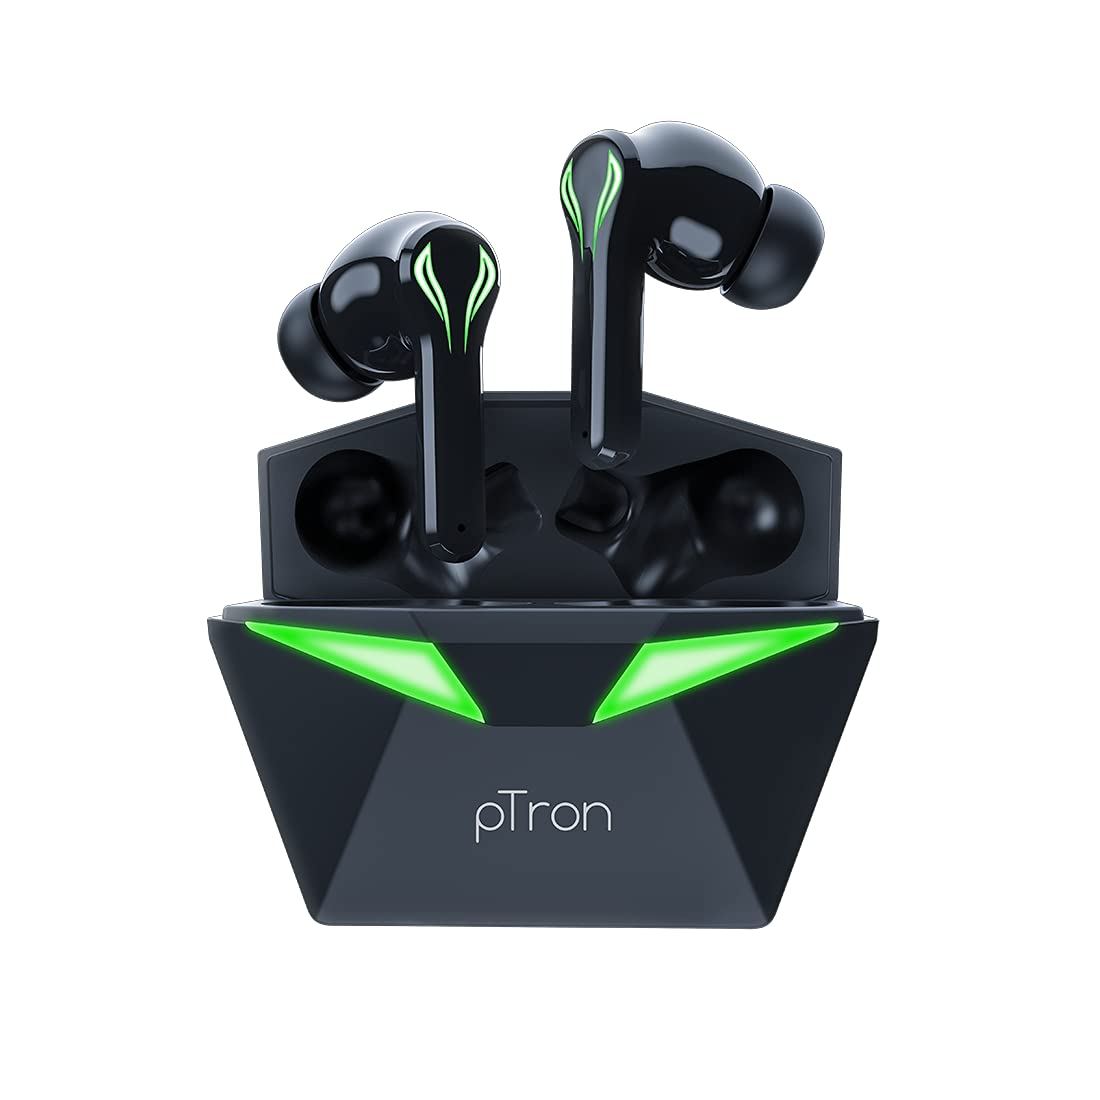 Amazon Deal: 1300 रुपये का pTron ब्रांड का कार फोन चार्जर खरीदें सिर्फ 349 रुपये में, एमेजॉन पर pTron के एक्सेसरीज की एक्सक्लूसिव डील